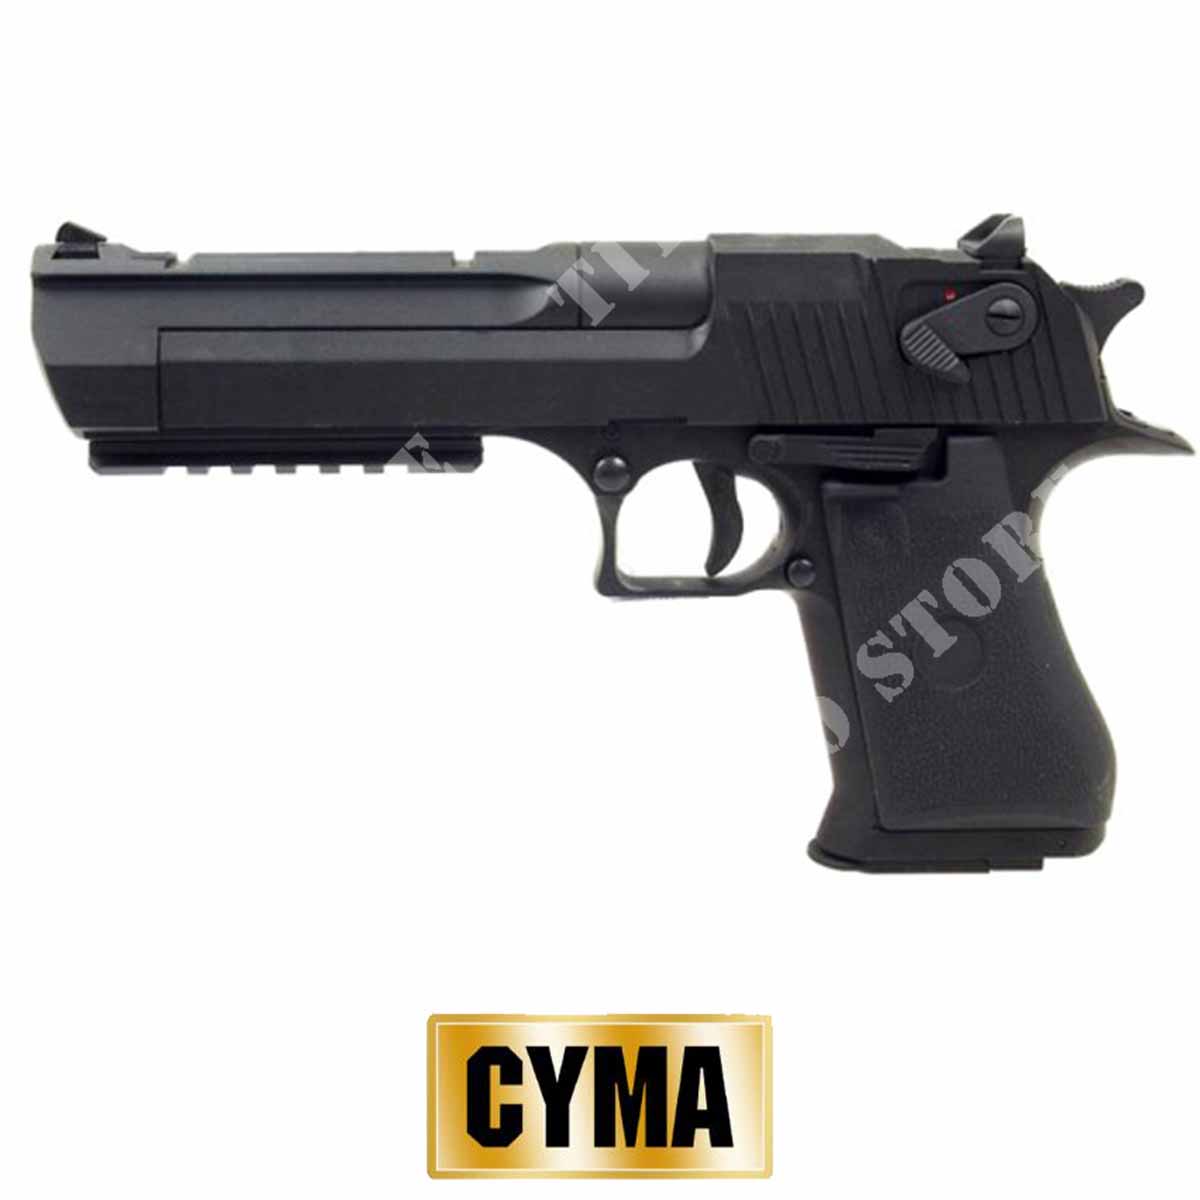 Glock eléctrica CM030 cyma - Pistolas eléctricas - Tienda de